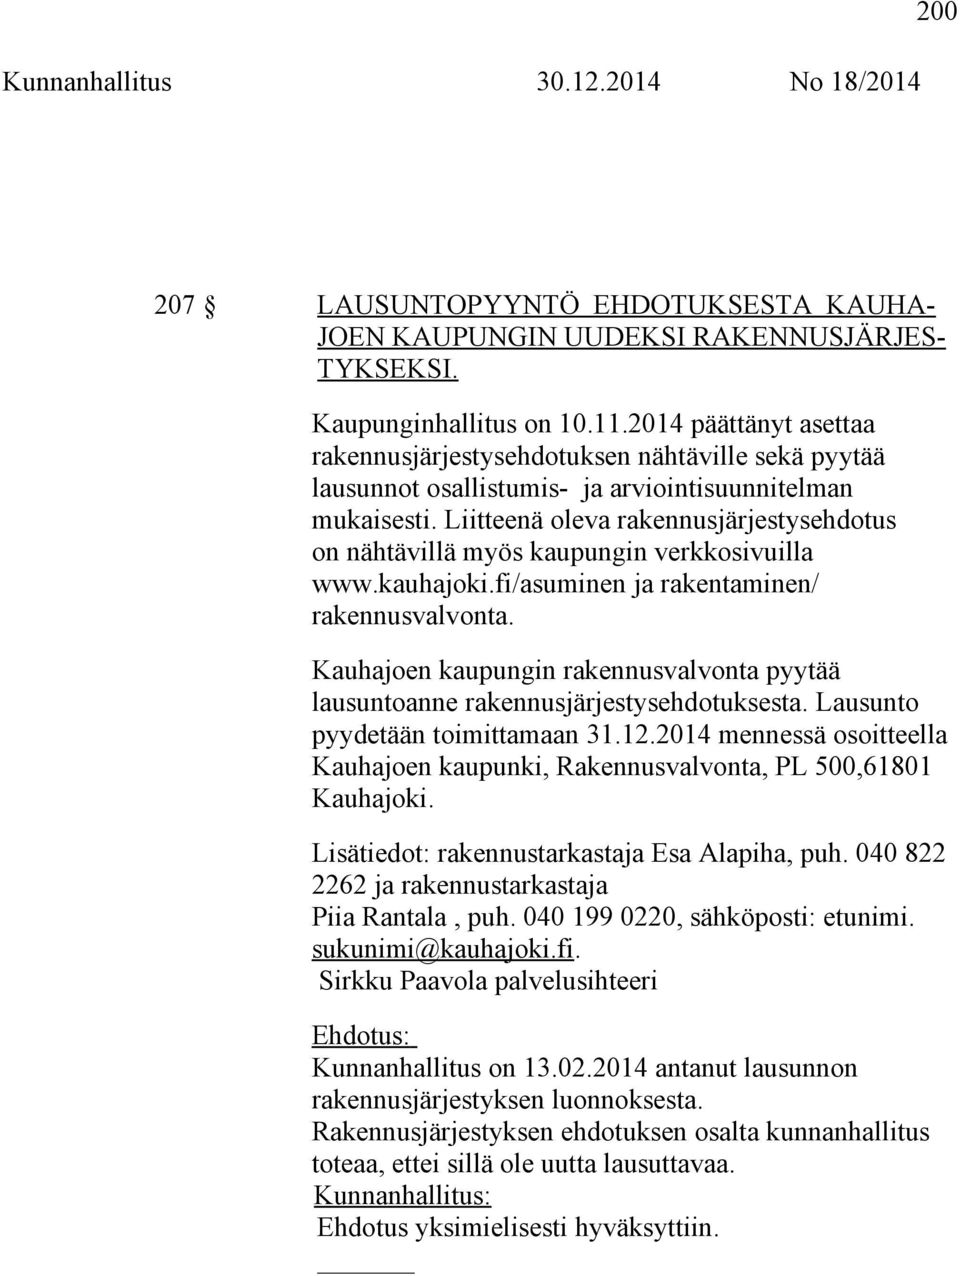 Liitteenä oleva rakennusjärjestysehdotus on nähtävillä myös kaupungin verkkosivuilla www.kauhajoki.fi/asuminen ja rakentaminen/ rakennusvalvonta.